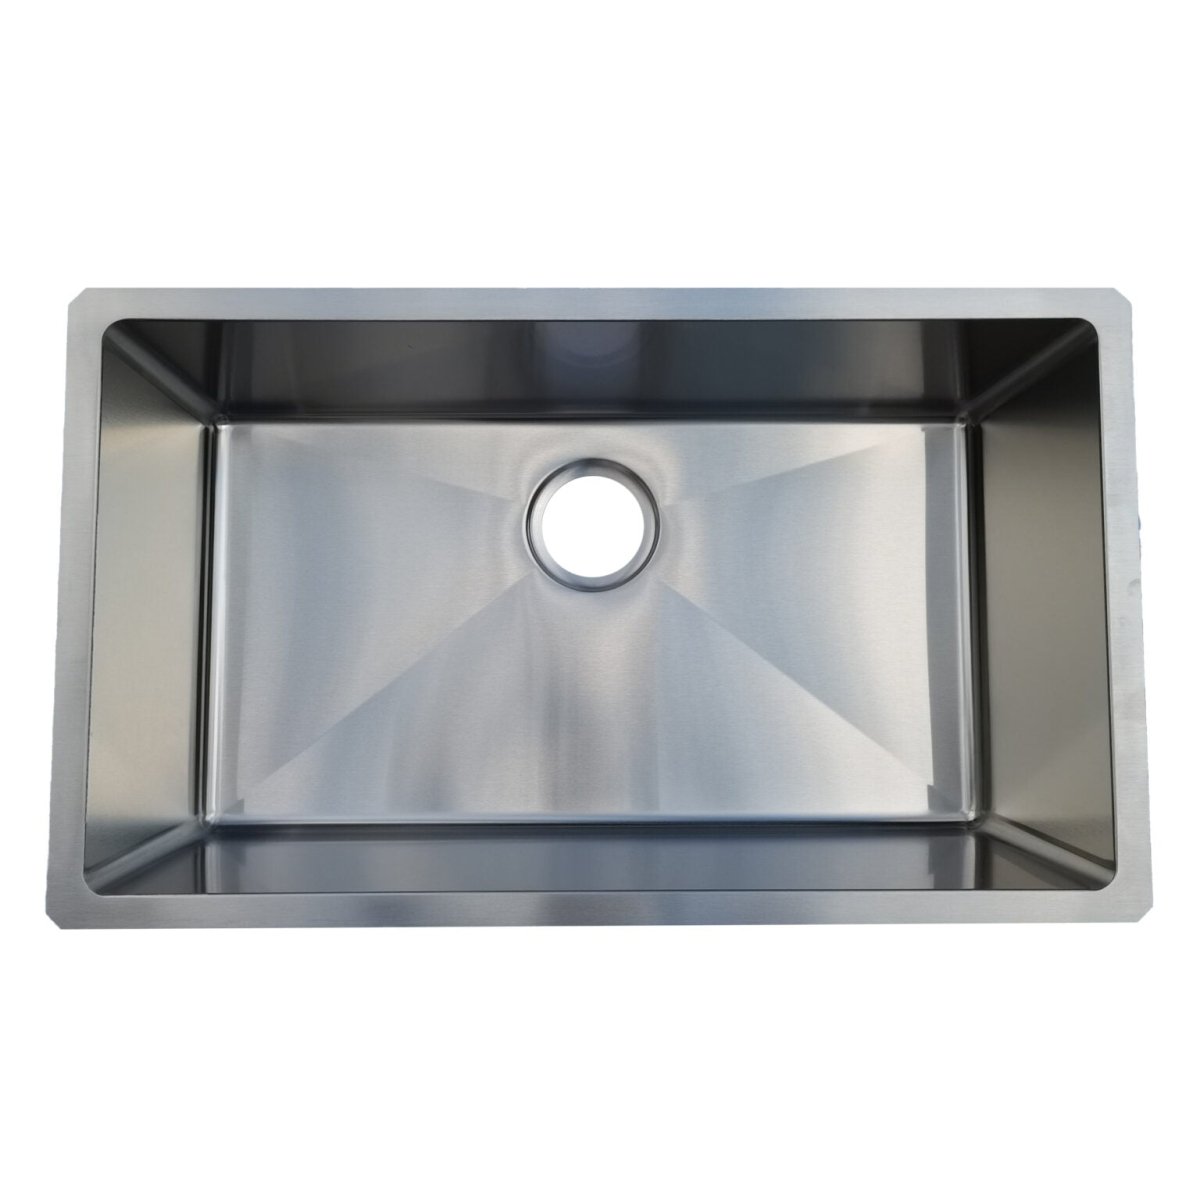 18g Micro Radius 30×18 Single Bowl Undermount Stainless Steel Kitchen Sink - Dakota Sinks